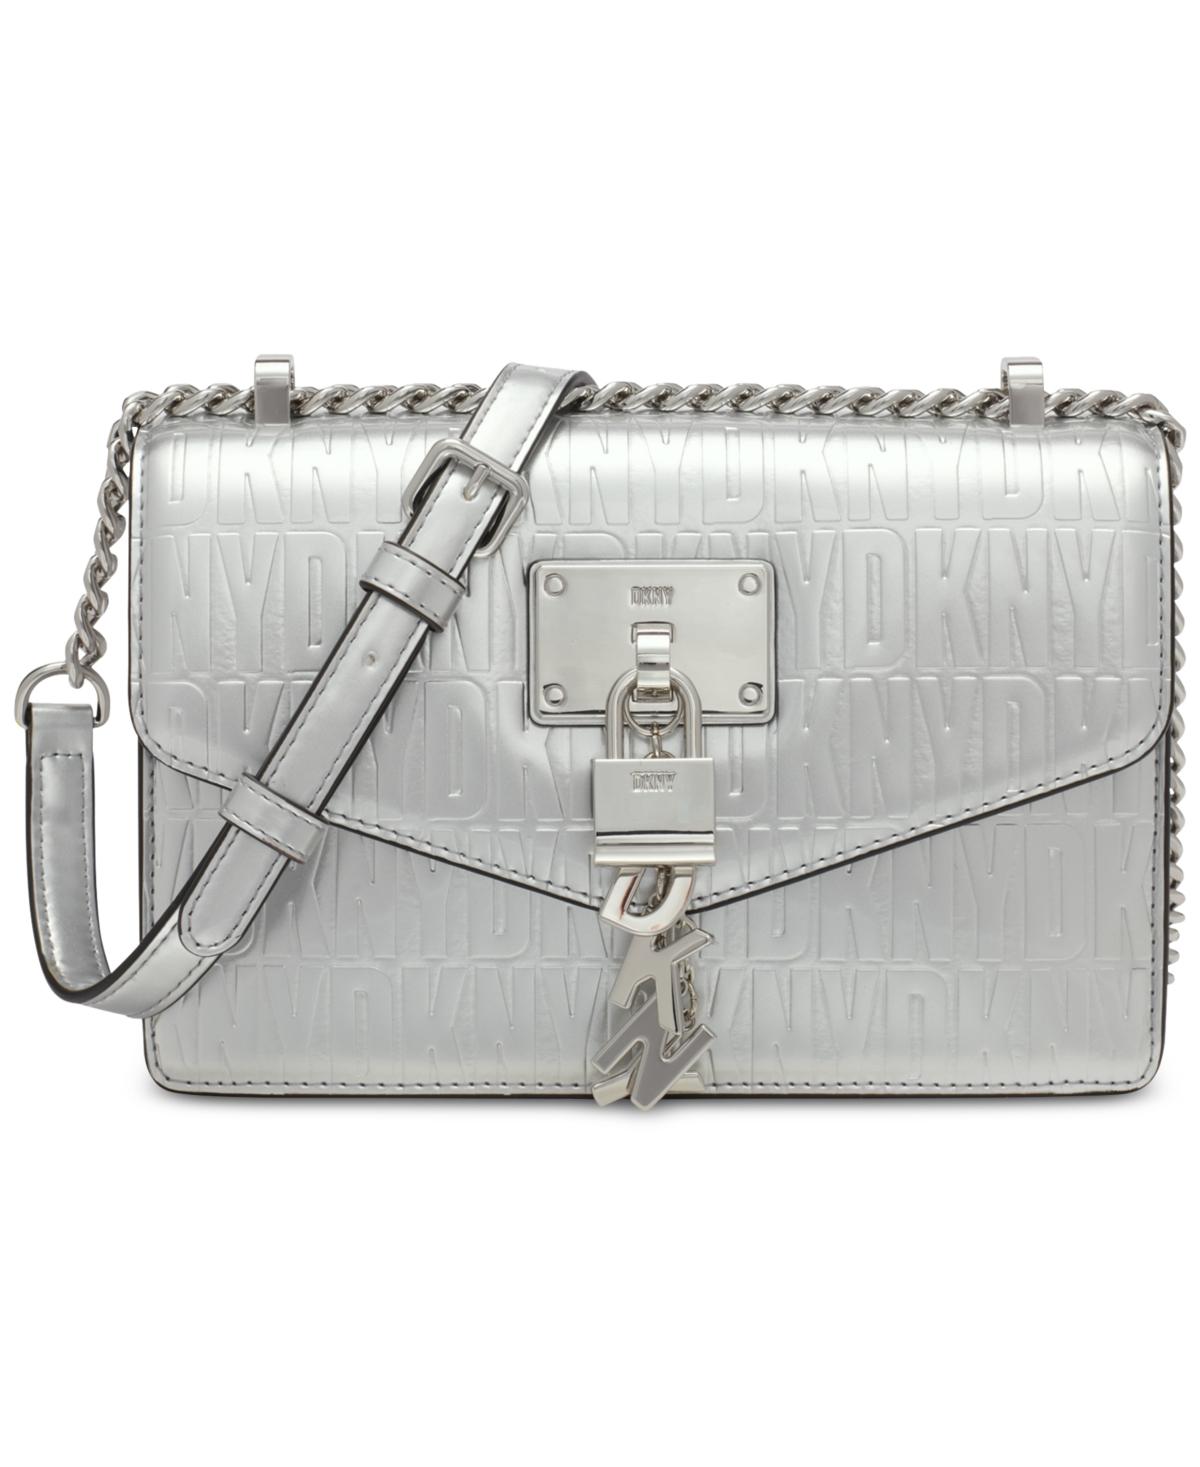 DKNY White Handbags - Macy's